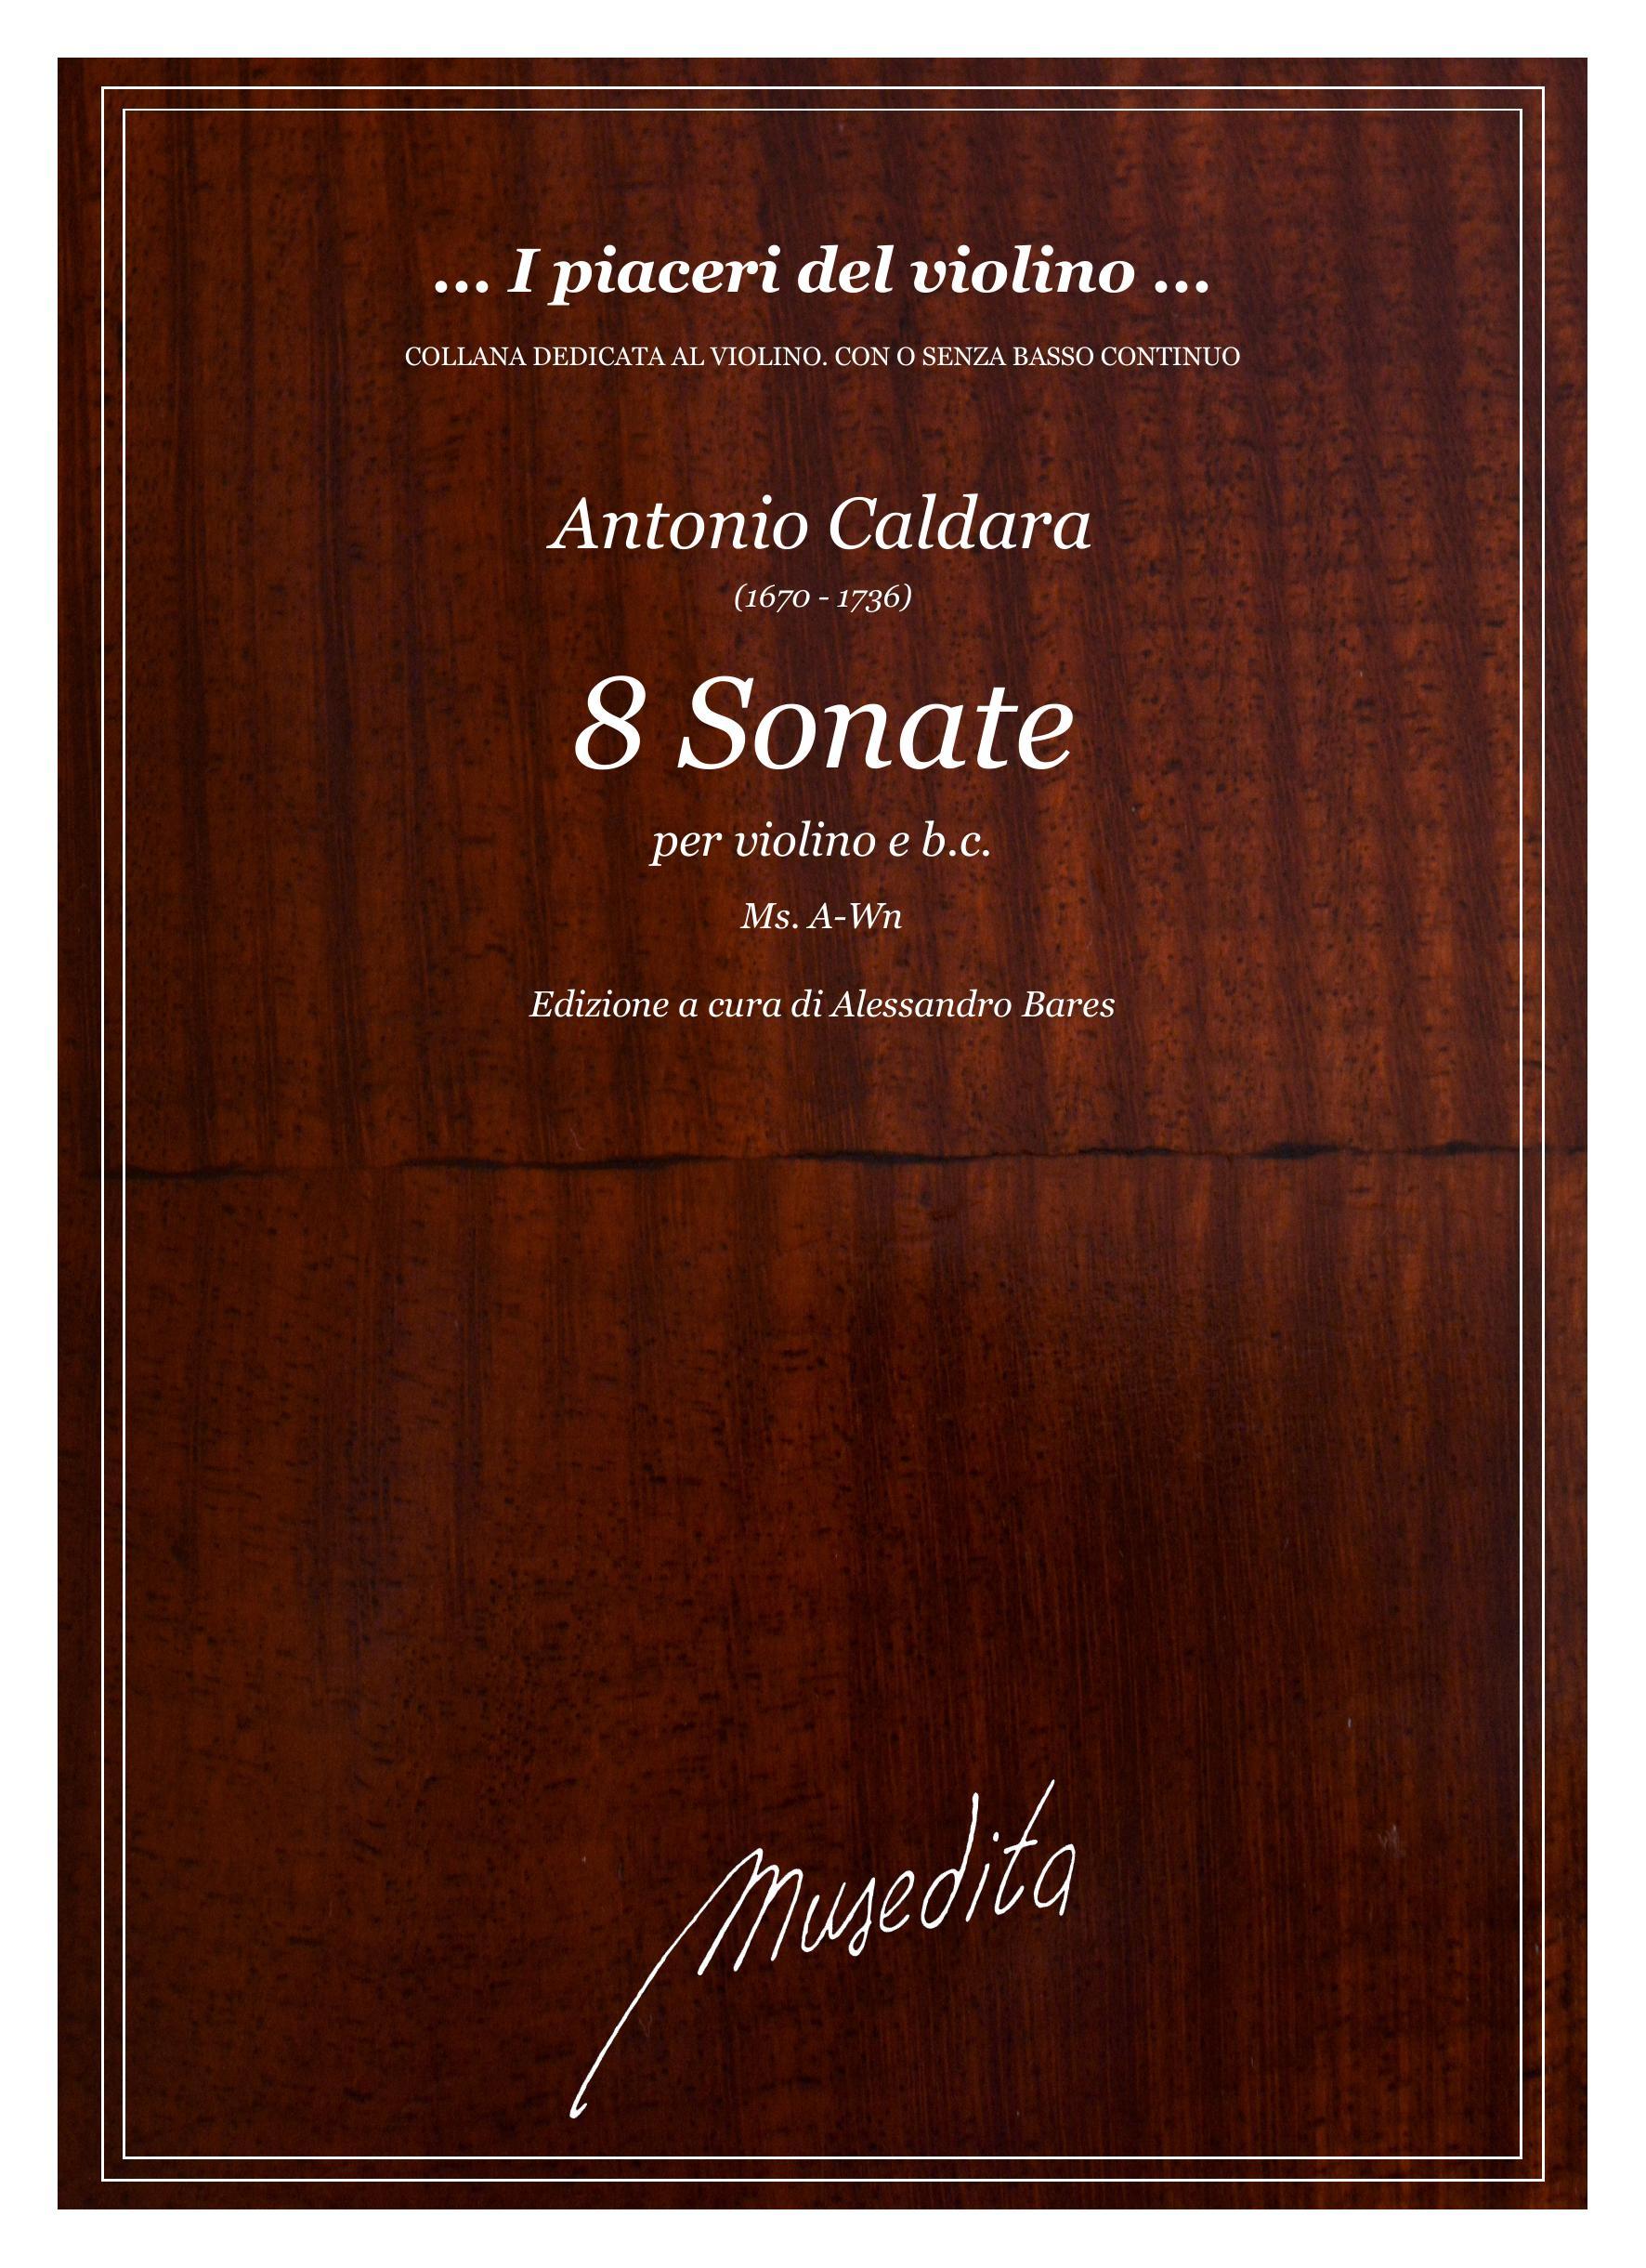 A.Caldara: 8 Sonate (Ms, A-Wn)